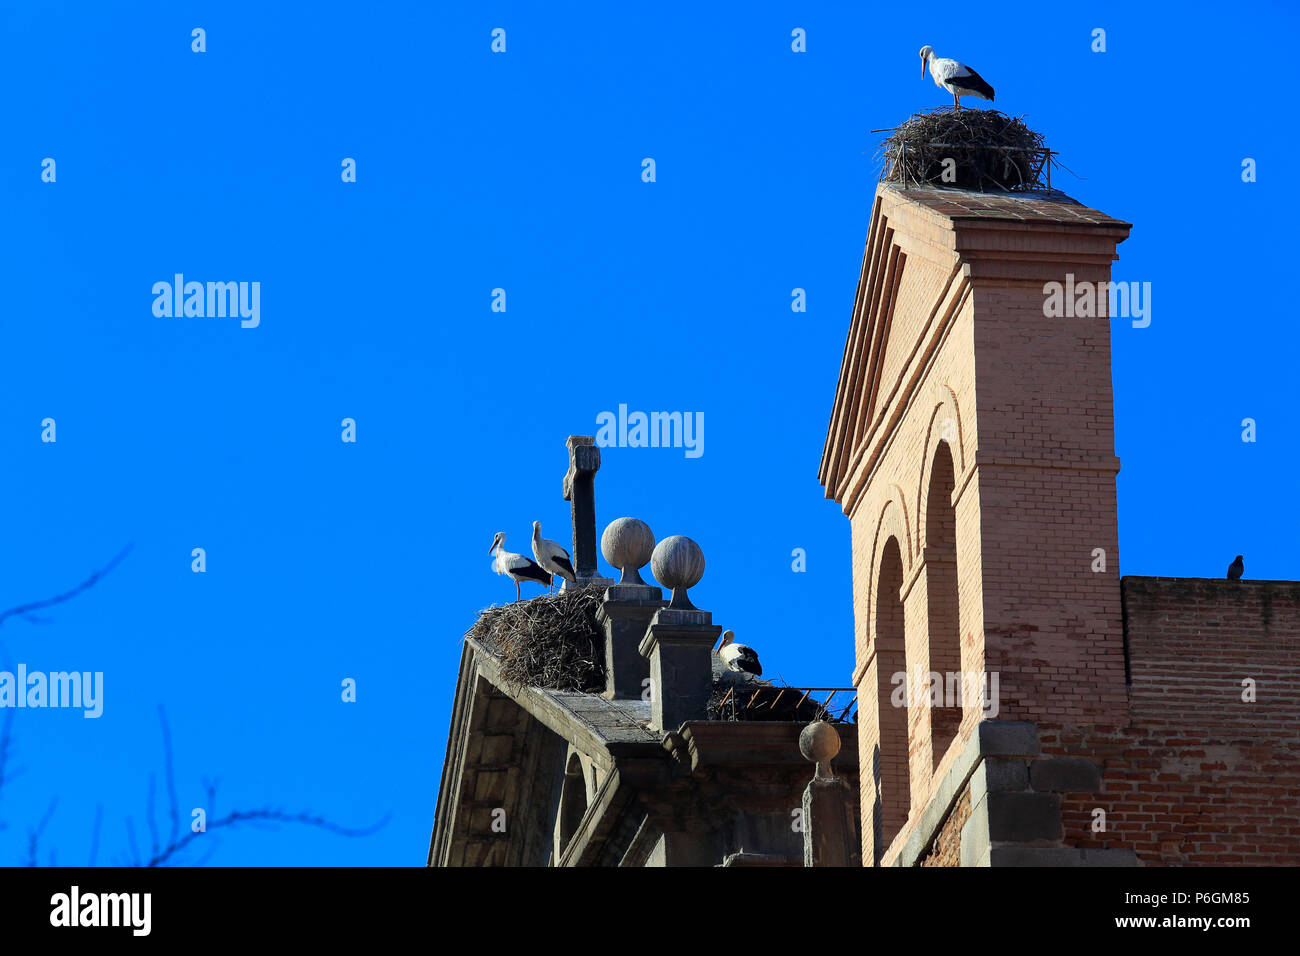 Cicogne bianche nel suo nido sul tetto della Parroquia Santa Maria la Mayor attico nel centro di Alcala de Henares, una storica e affascinante città vicino a Foto Stock